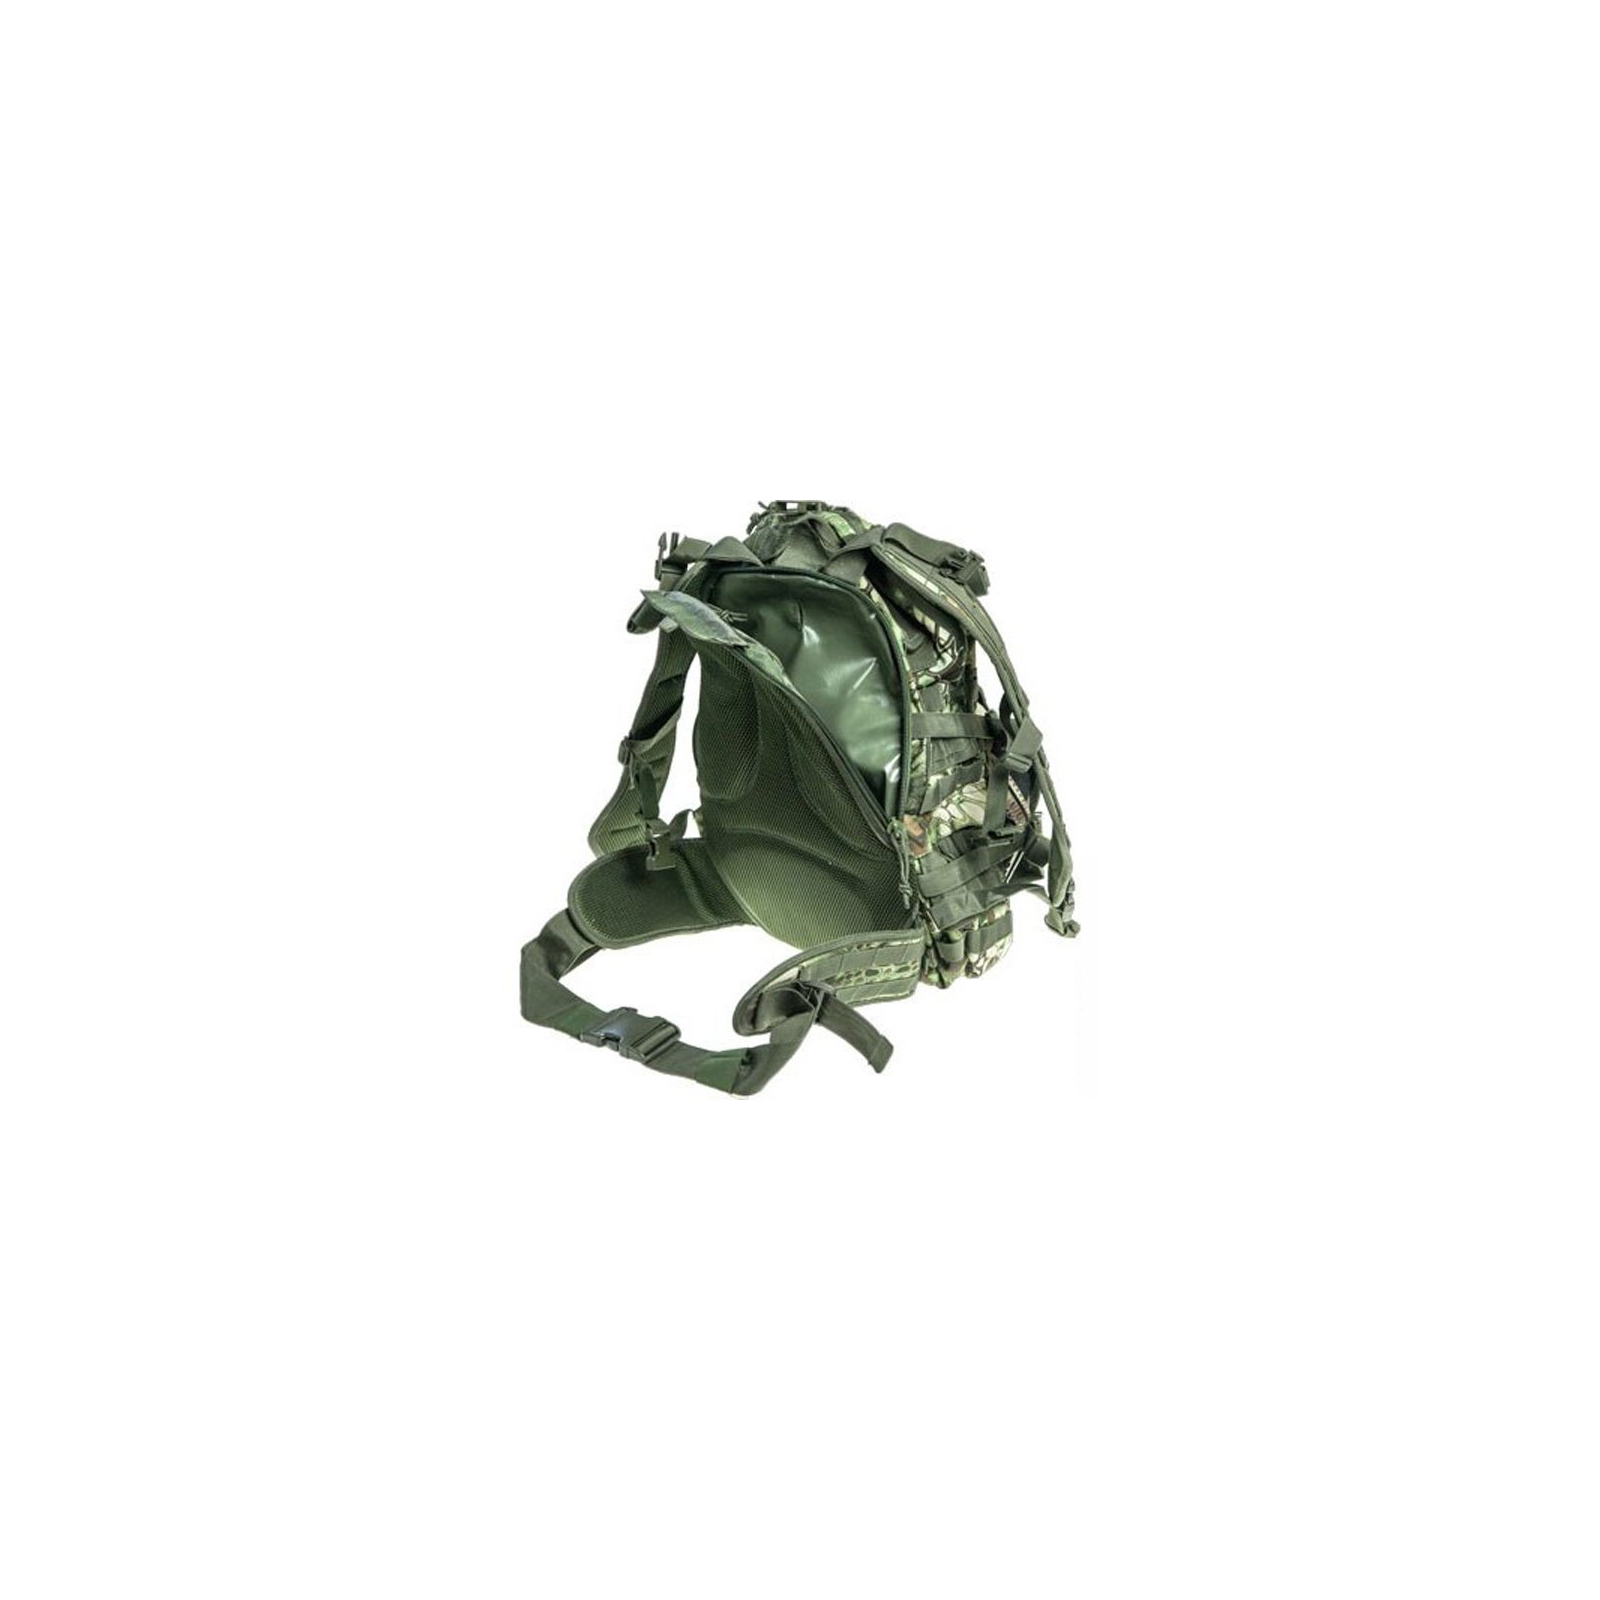 Рюкзак туристический Skif Tac тактический патрульный 35 литров kryptek green (GB0110-KGR) изображение 3